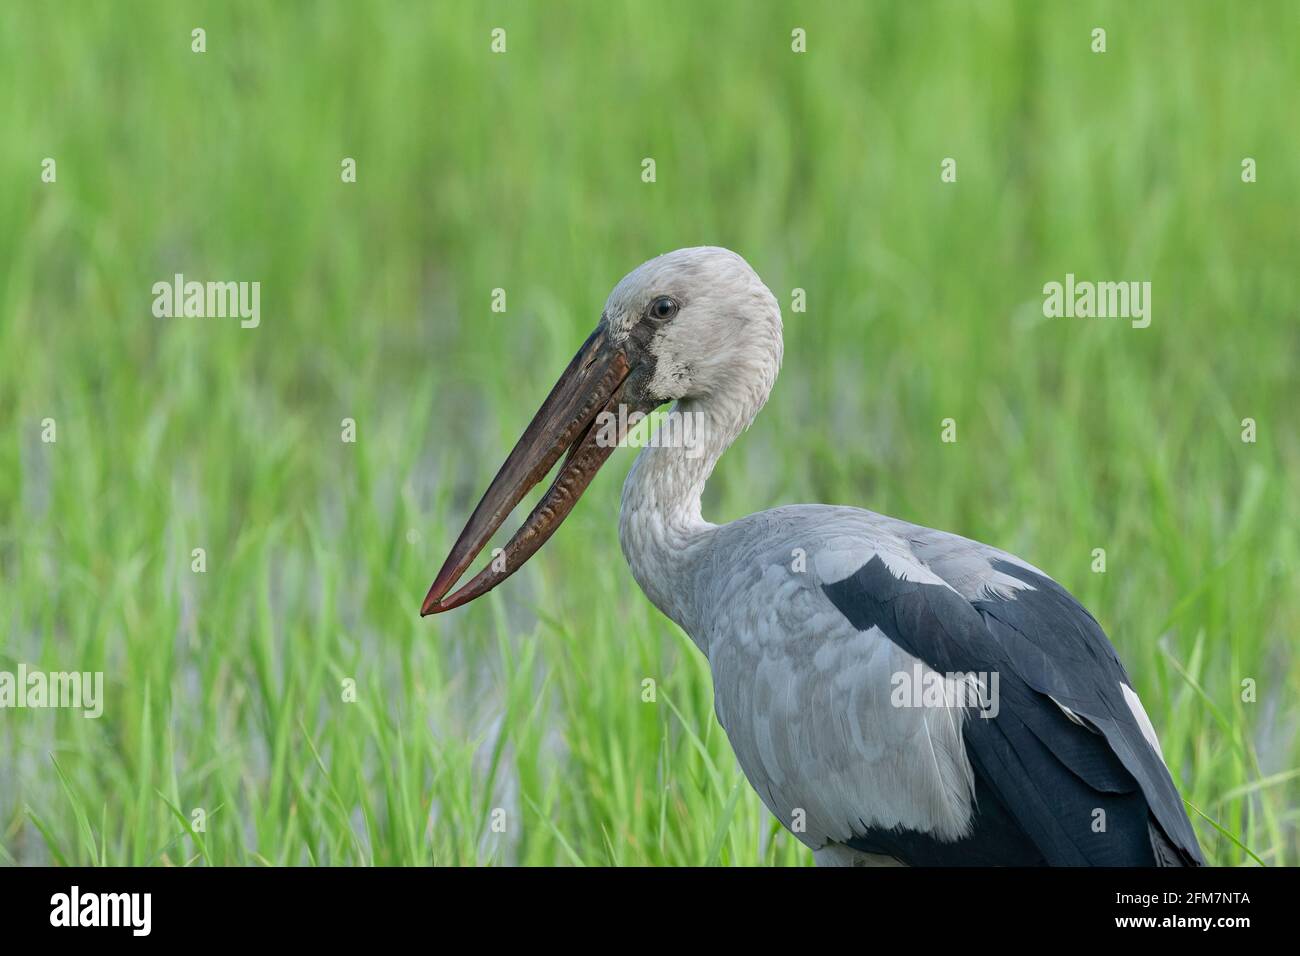 El Asian openbill o Asian openbill stork (Anastomus oscitans) es una gran ave zancuda en la familia Ciconiidae cigüeñas. Foto de stock